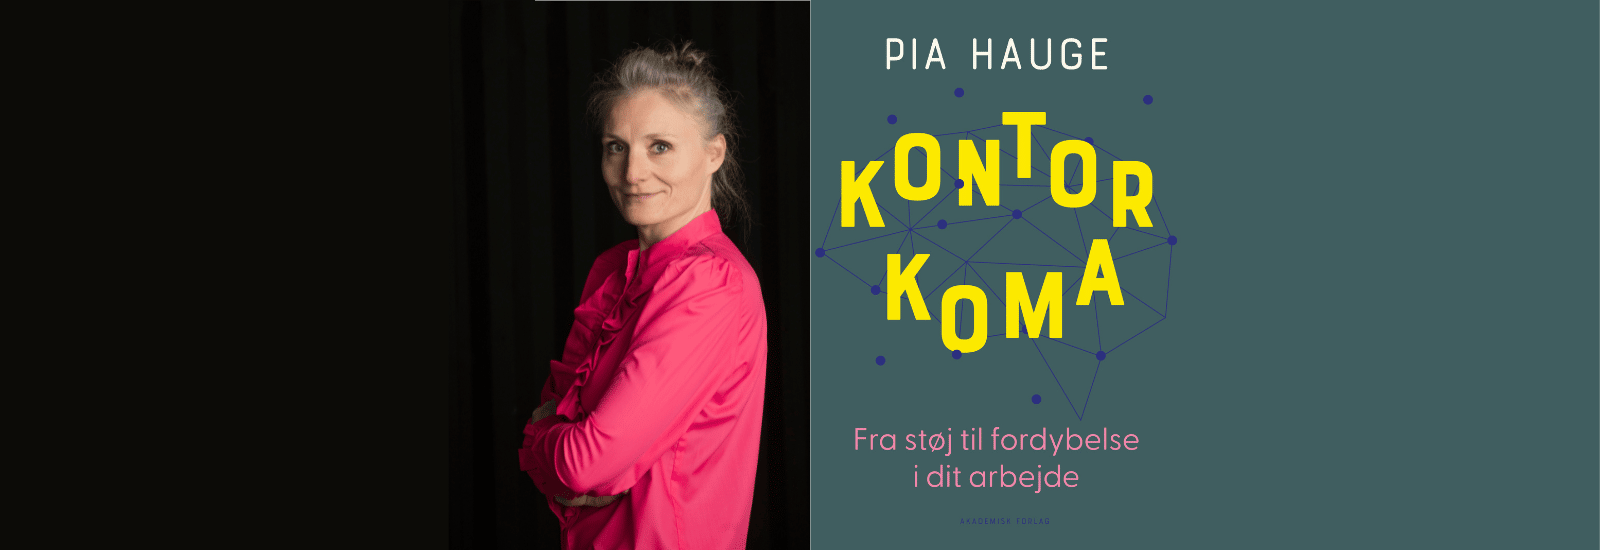 Pia Hauge